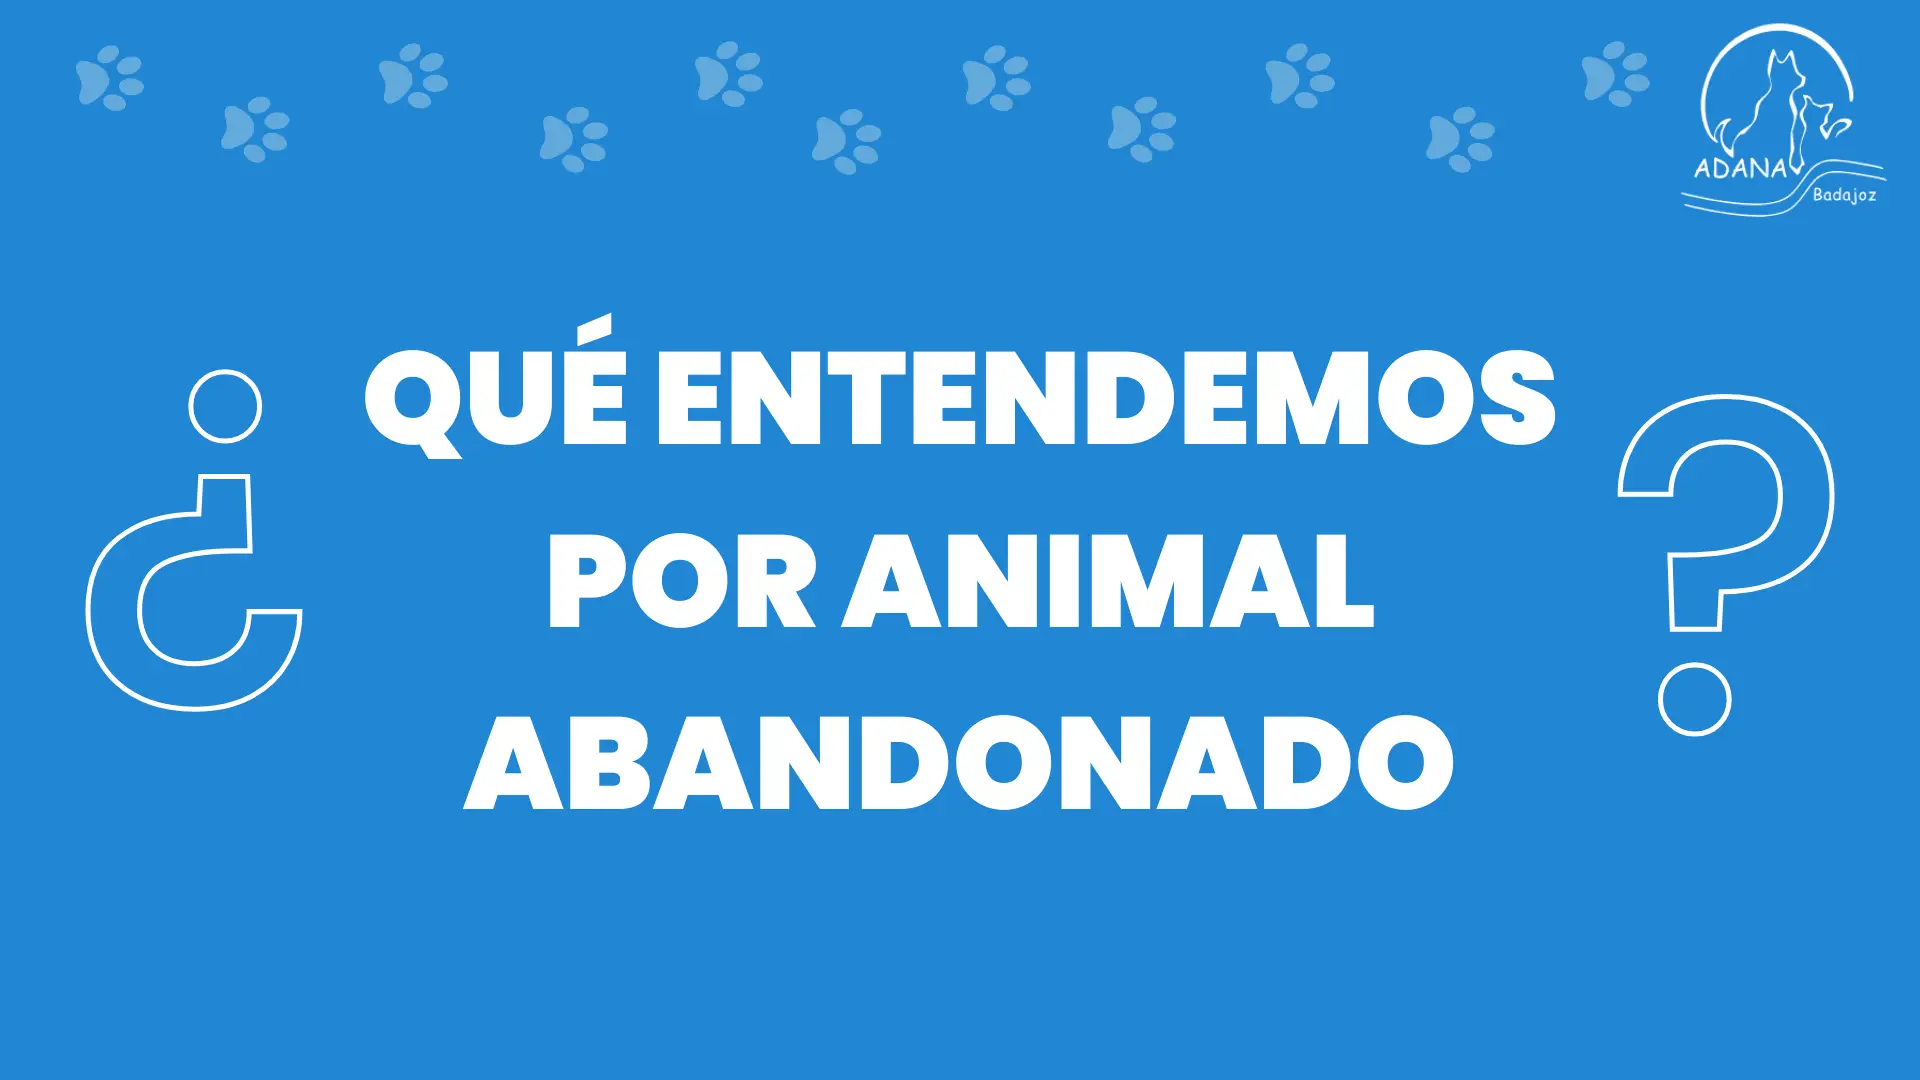 Nueva Ley de Proteccion Animal Asociacion Adana Badajoz